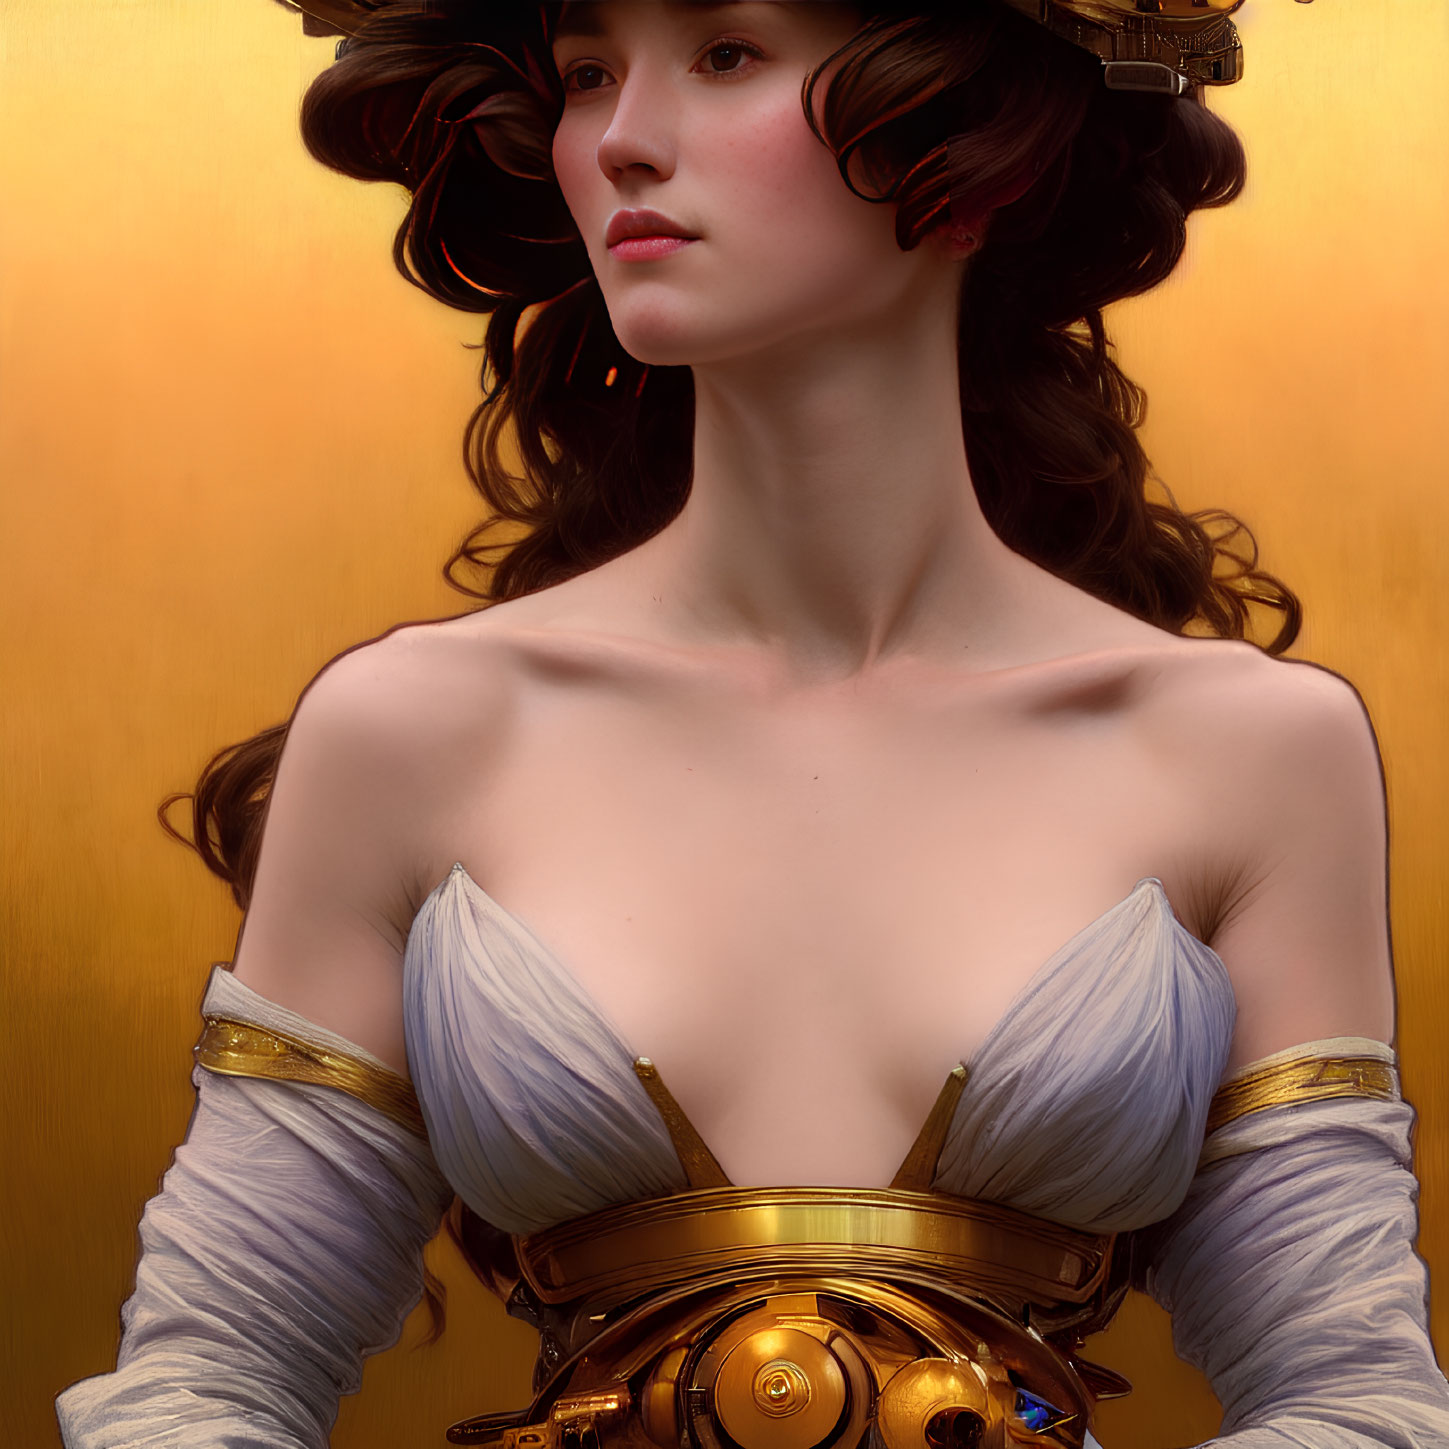 Digital artwork: Victorian-era woman in steampunk attire on golden background